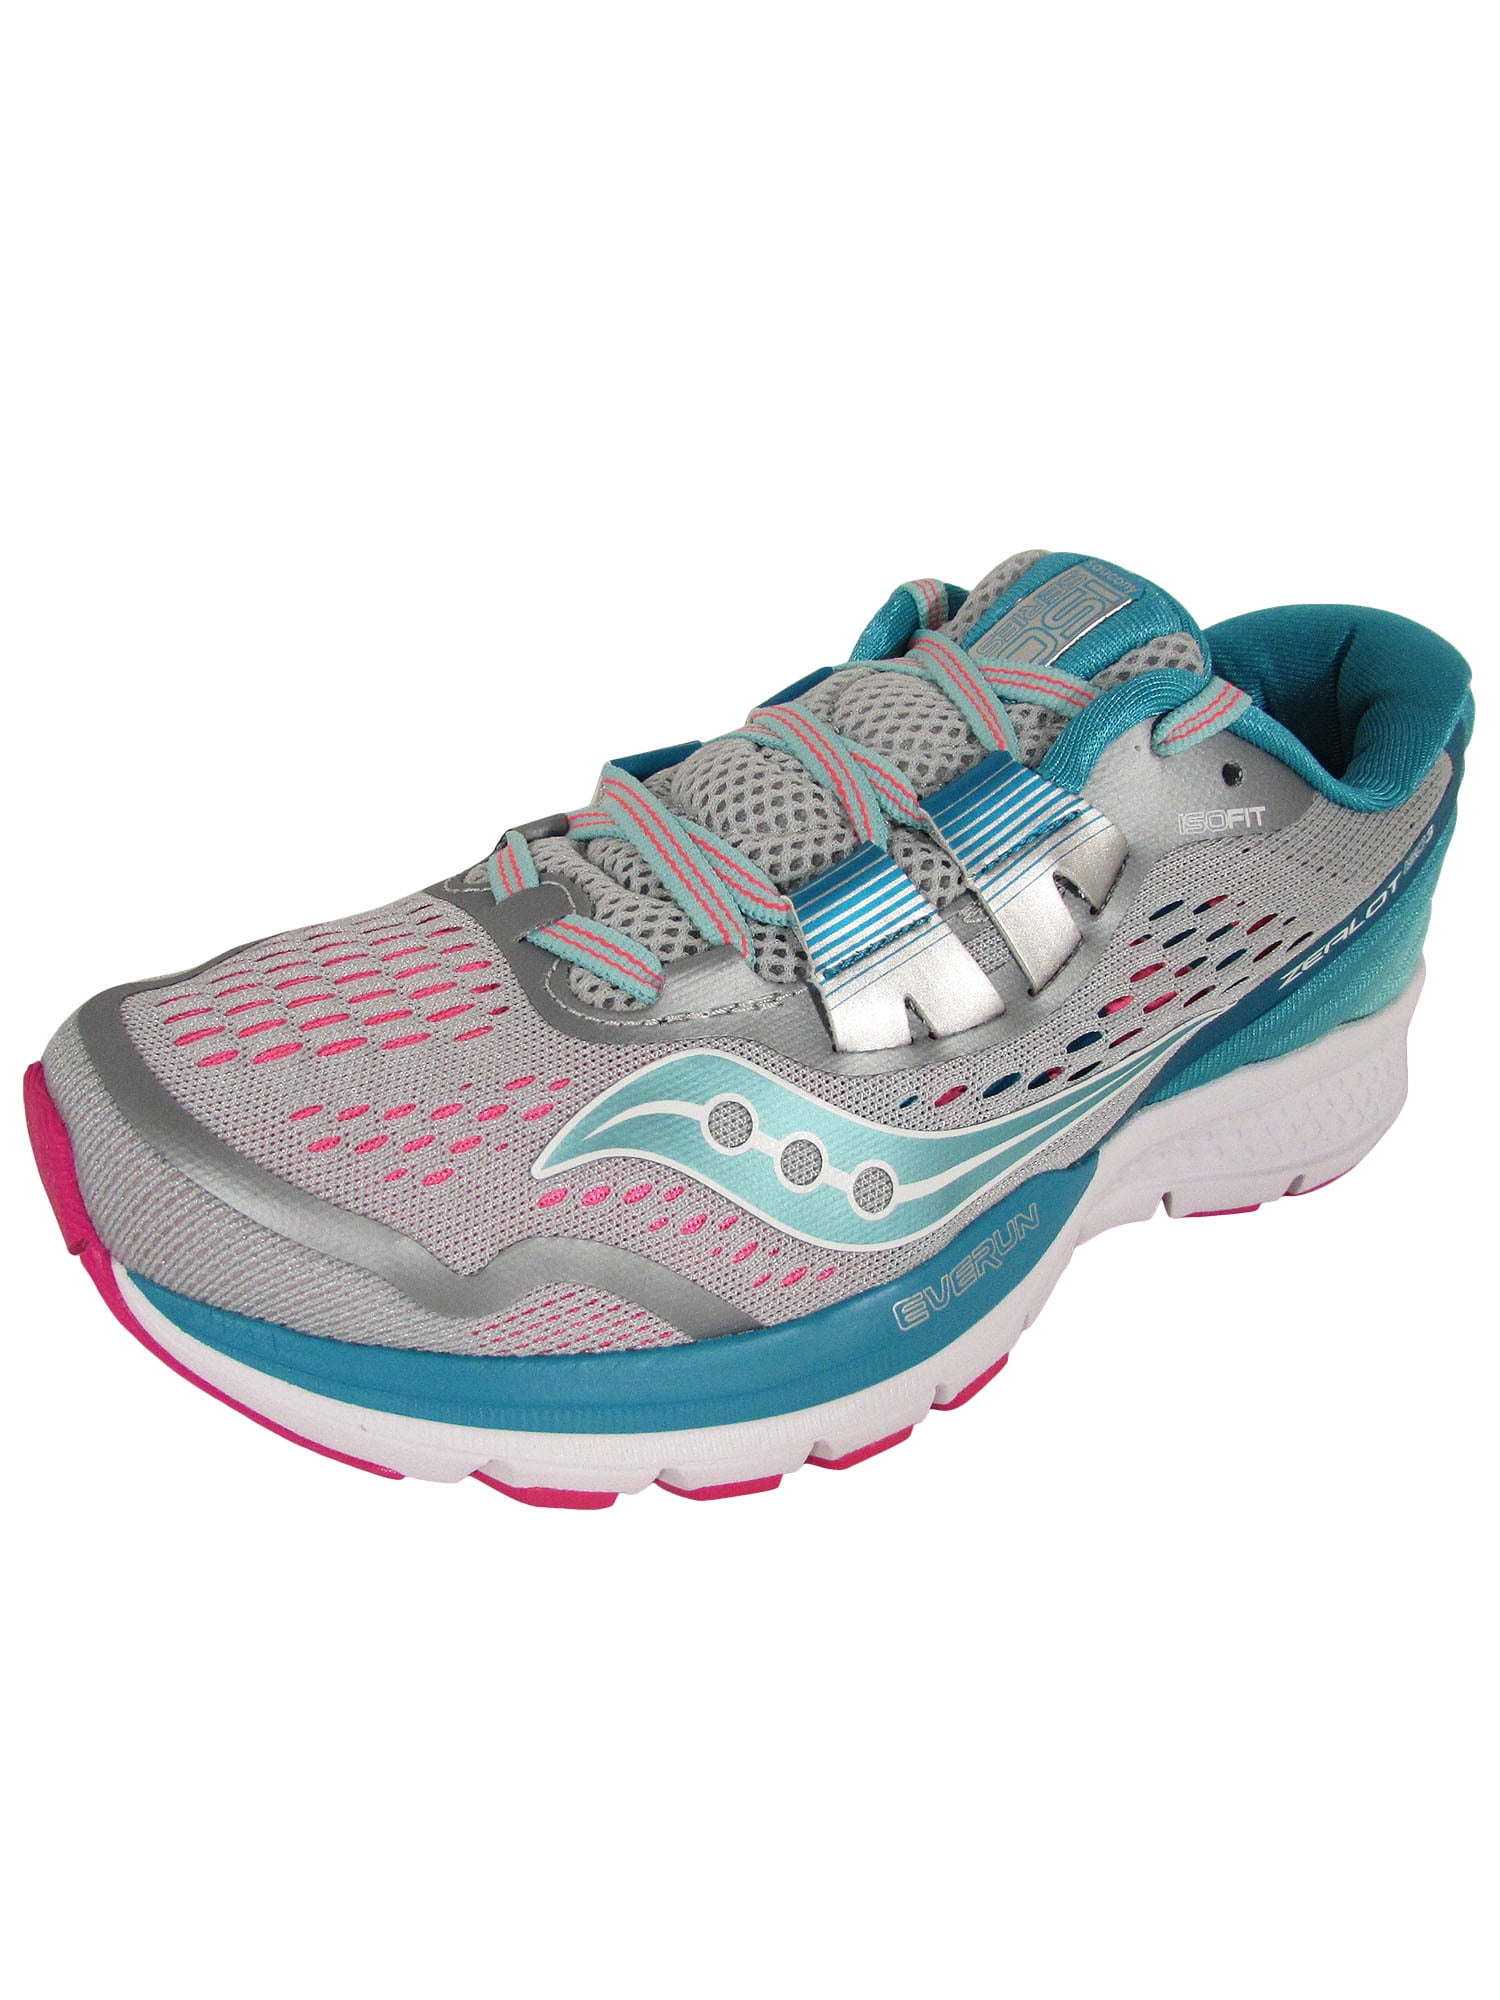 Saucony - Saucony Women Zealot ISO 3 Neutral Running Shoes - Walmart ...